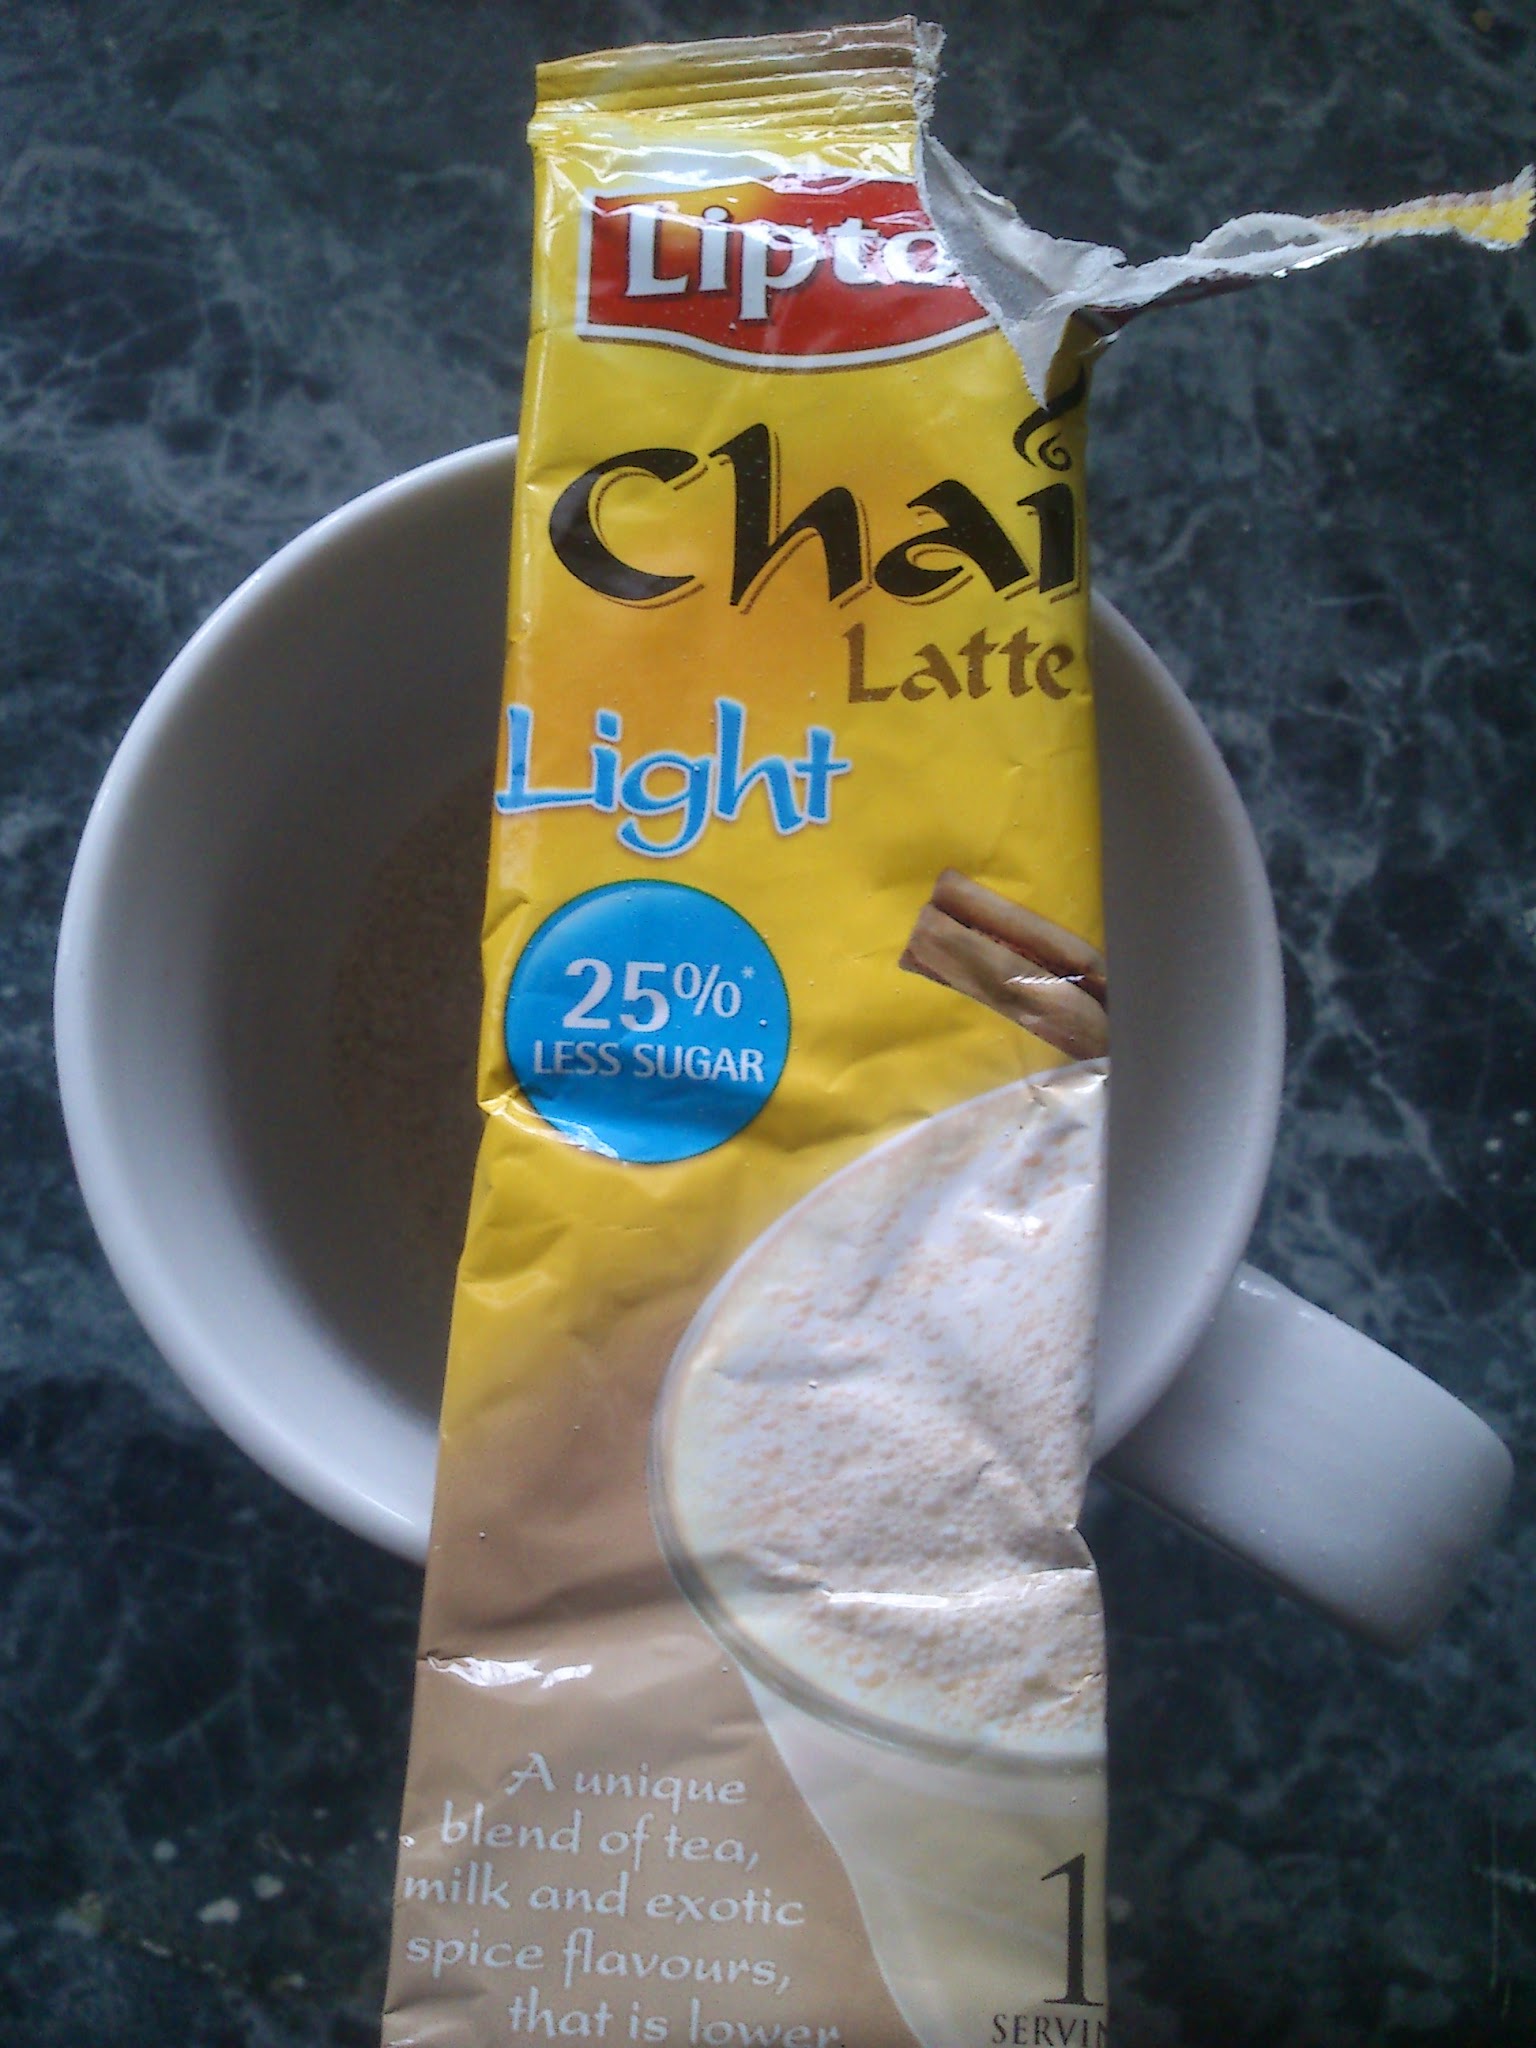 Review: Lipton Chai Latte Light